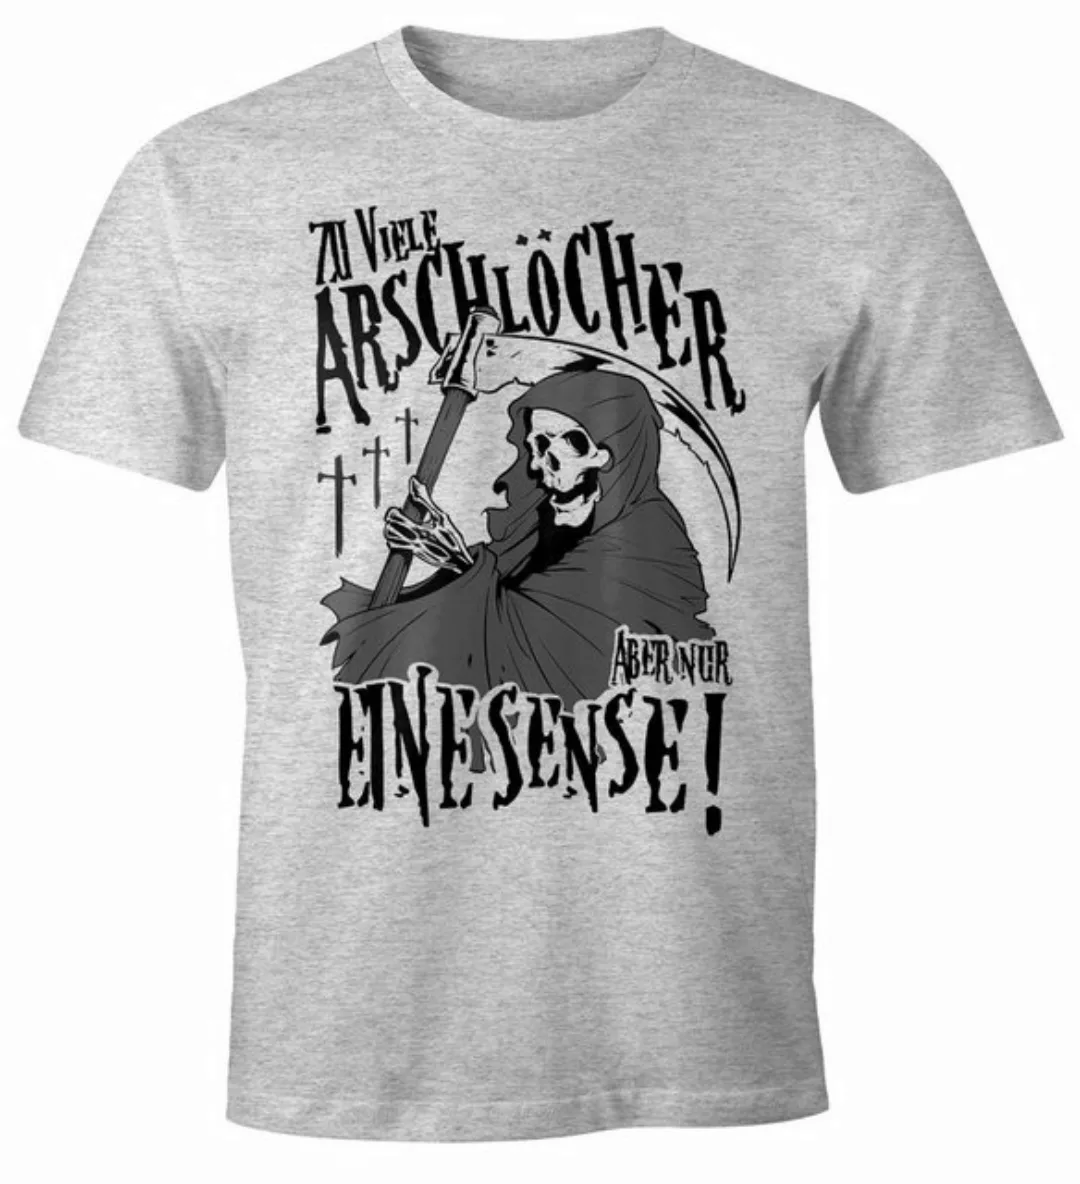 MoonWorks Print-Shirt So viele Arschlöcher aber nur eine Sense Herren T-Shi günstig online kaufen